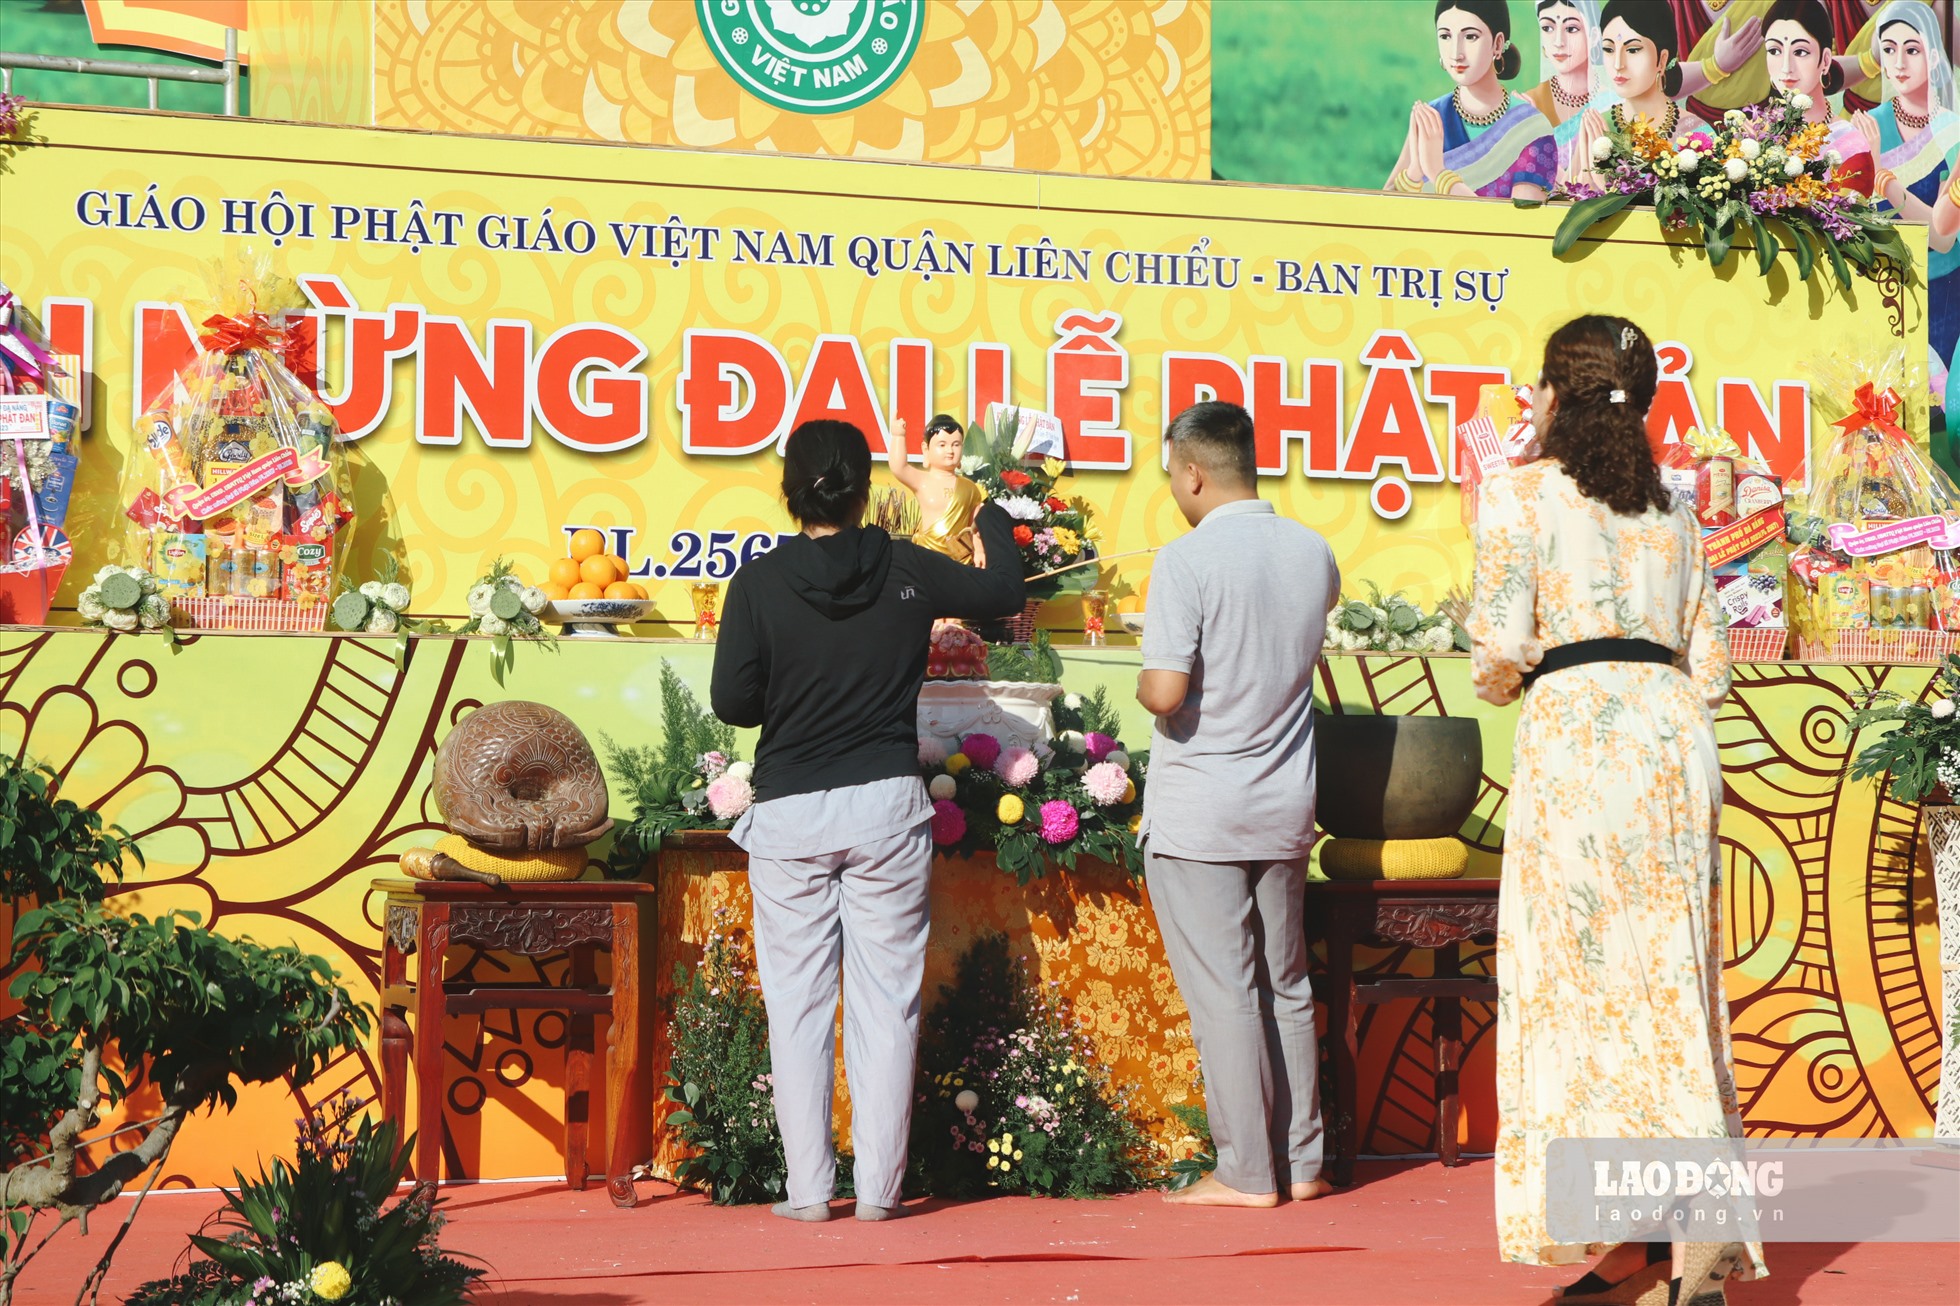 Đại lễ Khánh đản Đức Phật Thích Ca Mâu Ni được tổ chức trọng thể tại chùa Pháp Lâm, quận Hải Châu, TP Đà Nẵng